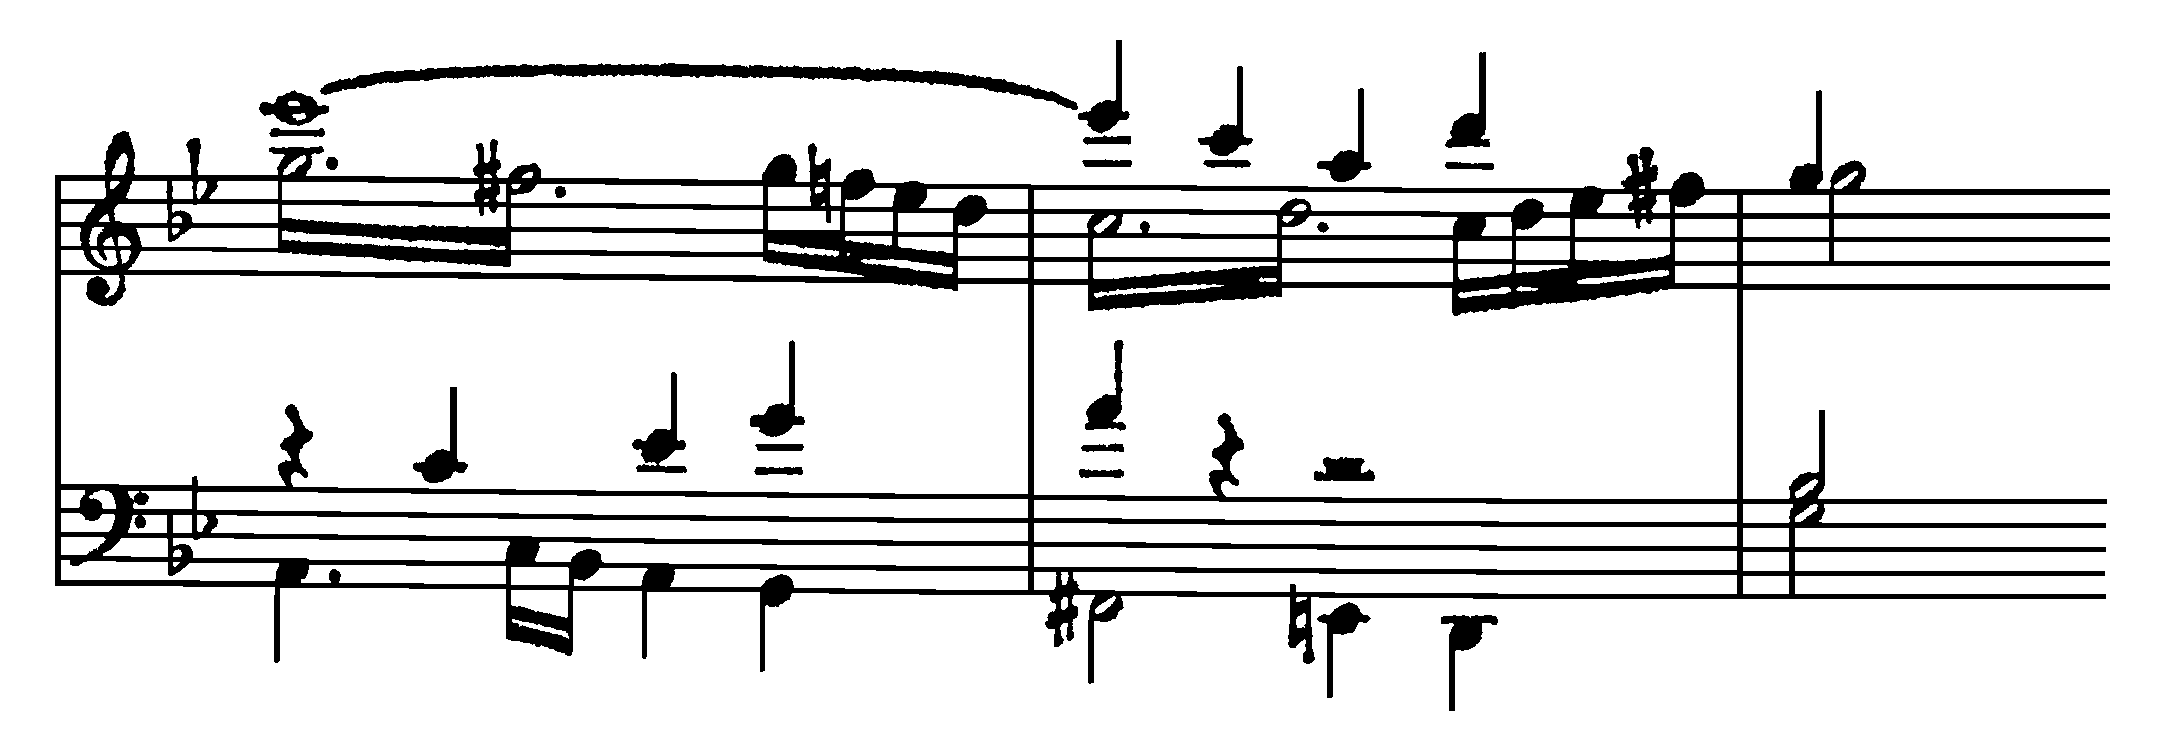 Symfoni, ex 84b